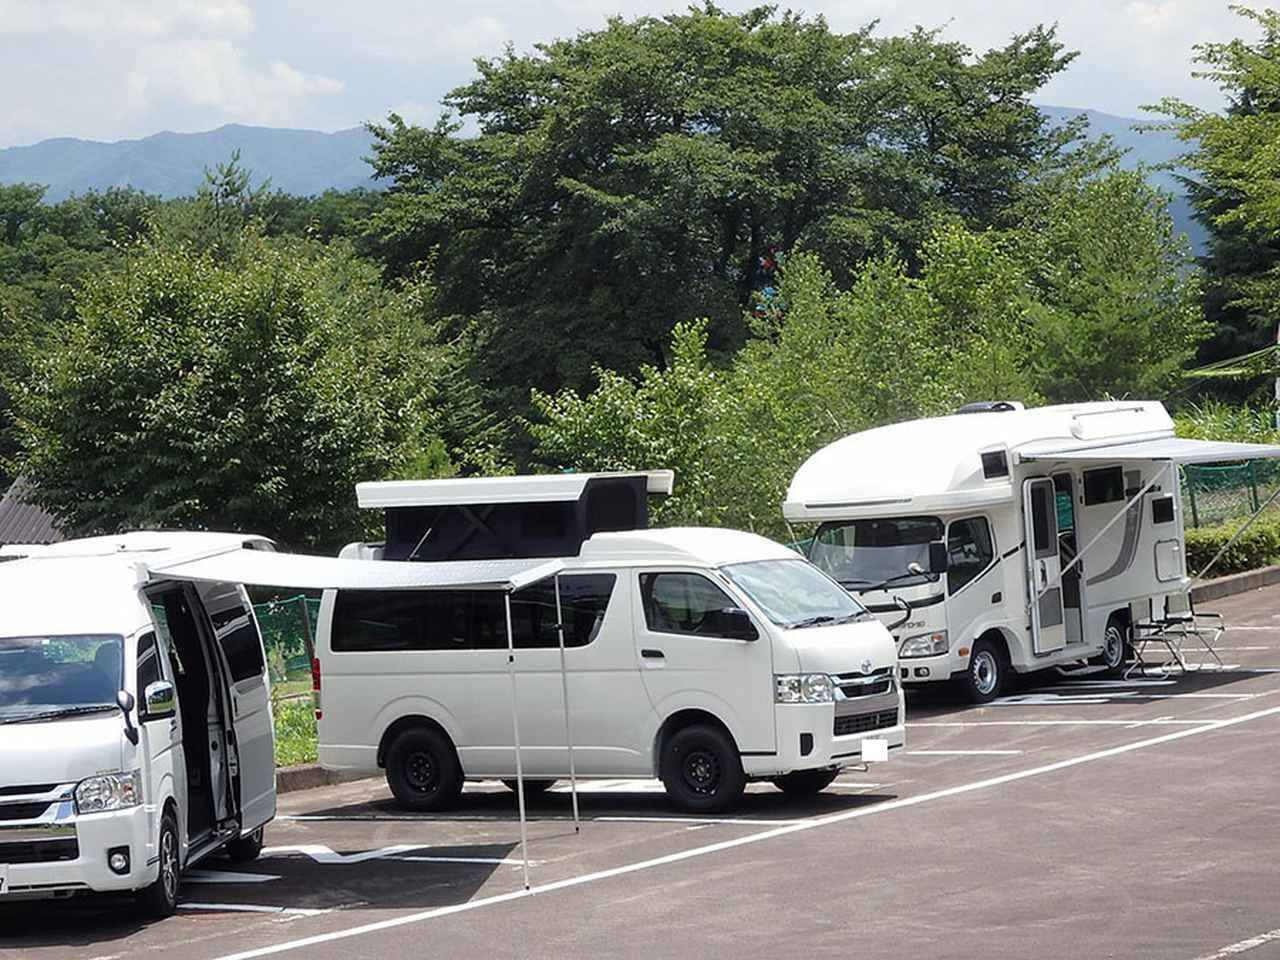 遊園地 キャンプ場を併設する新潟のリゾート施設に車中泊スポットが誕生 21年7月29日 エキサイトニュース